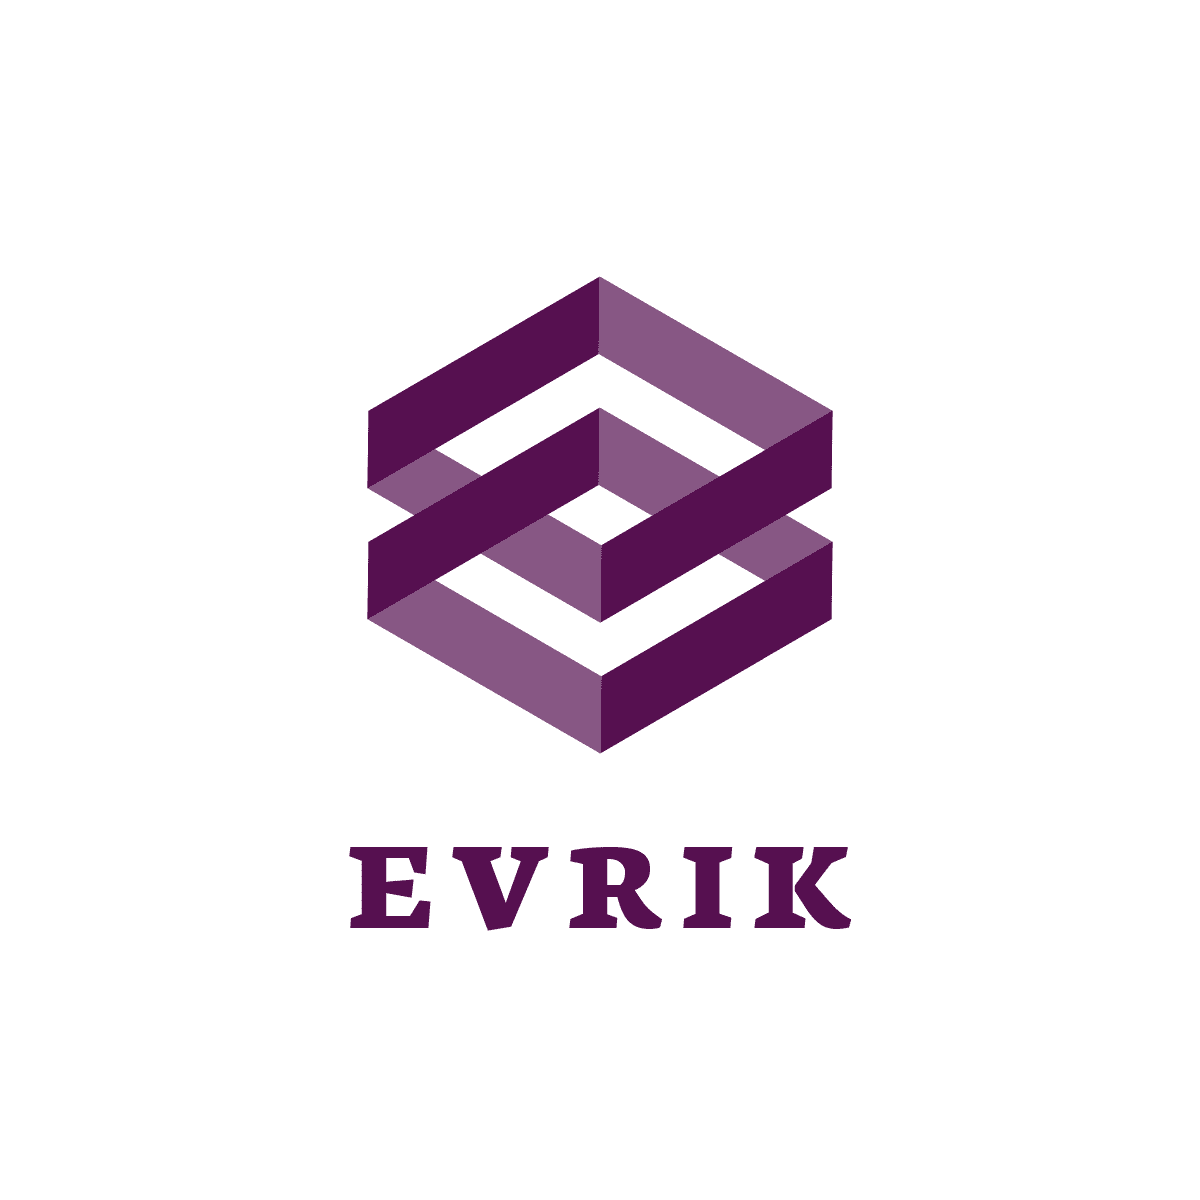 Evrik logo